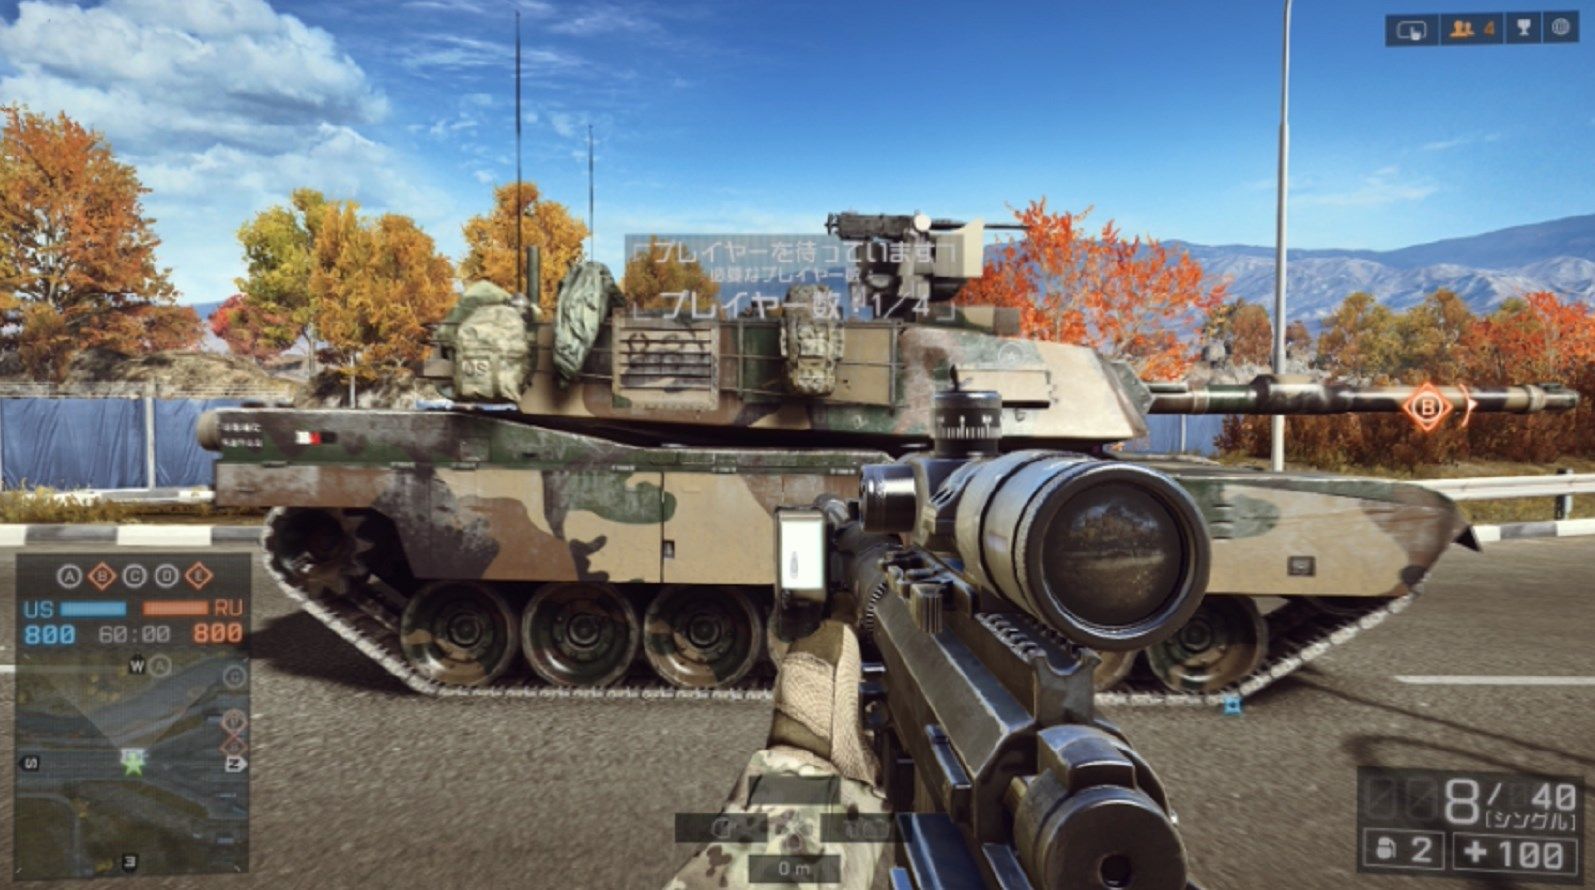 【Battlefield 4】MBT（主力戦車 ）M1エイブラムスとT-90Aの性能差を比較してみたコメントコメントする